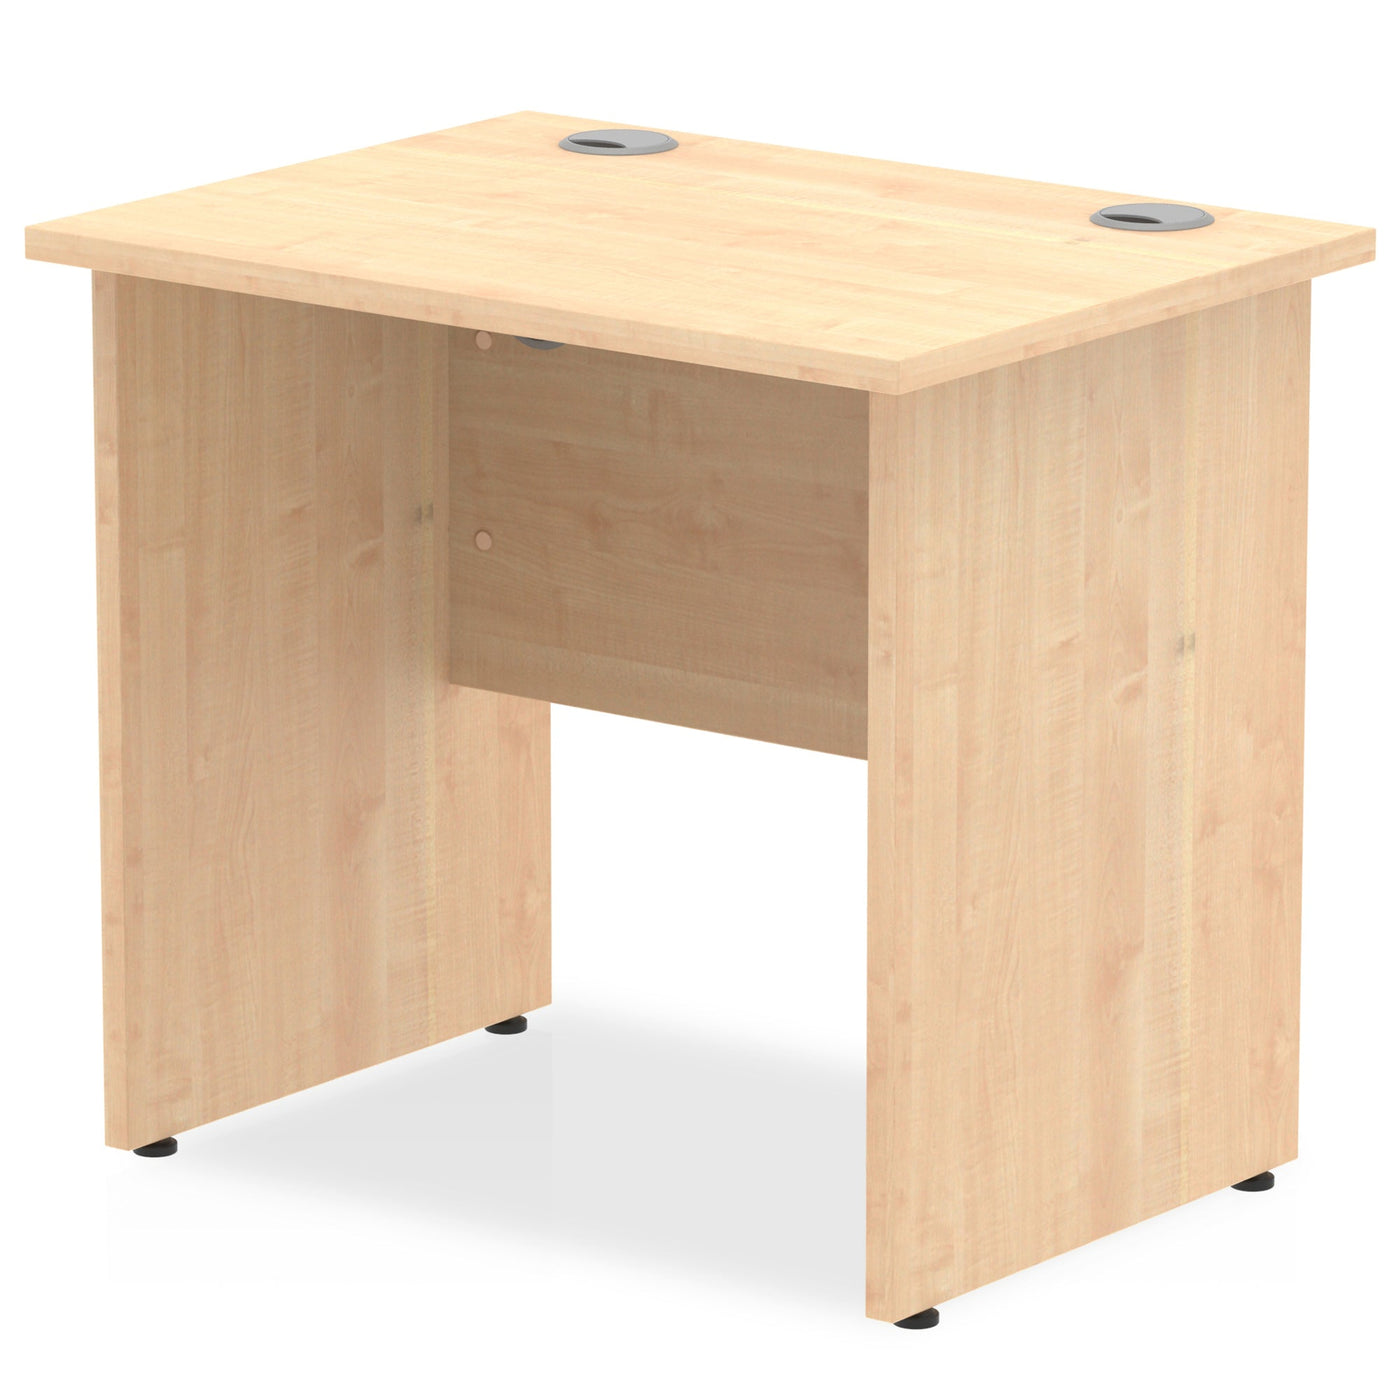 Impulse 800mm Slimline Home Office Desk | Panel End Desk | Home Office Furniture | Homework Desk | Work From Home Desk | Wooden Desk